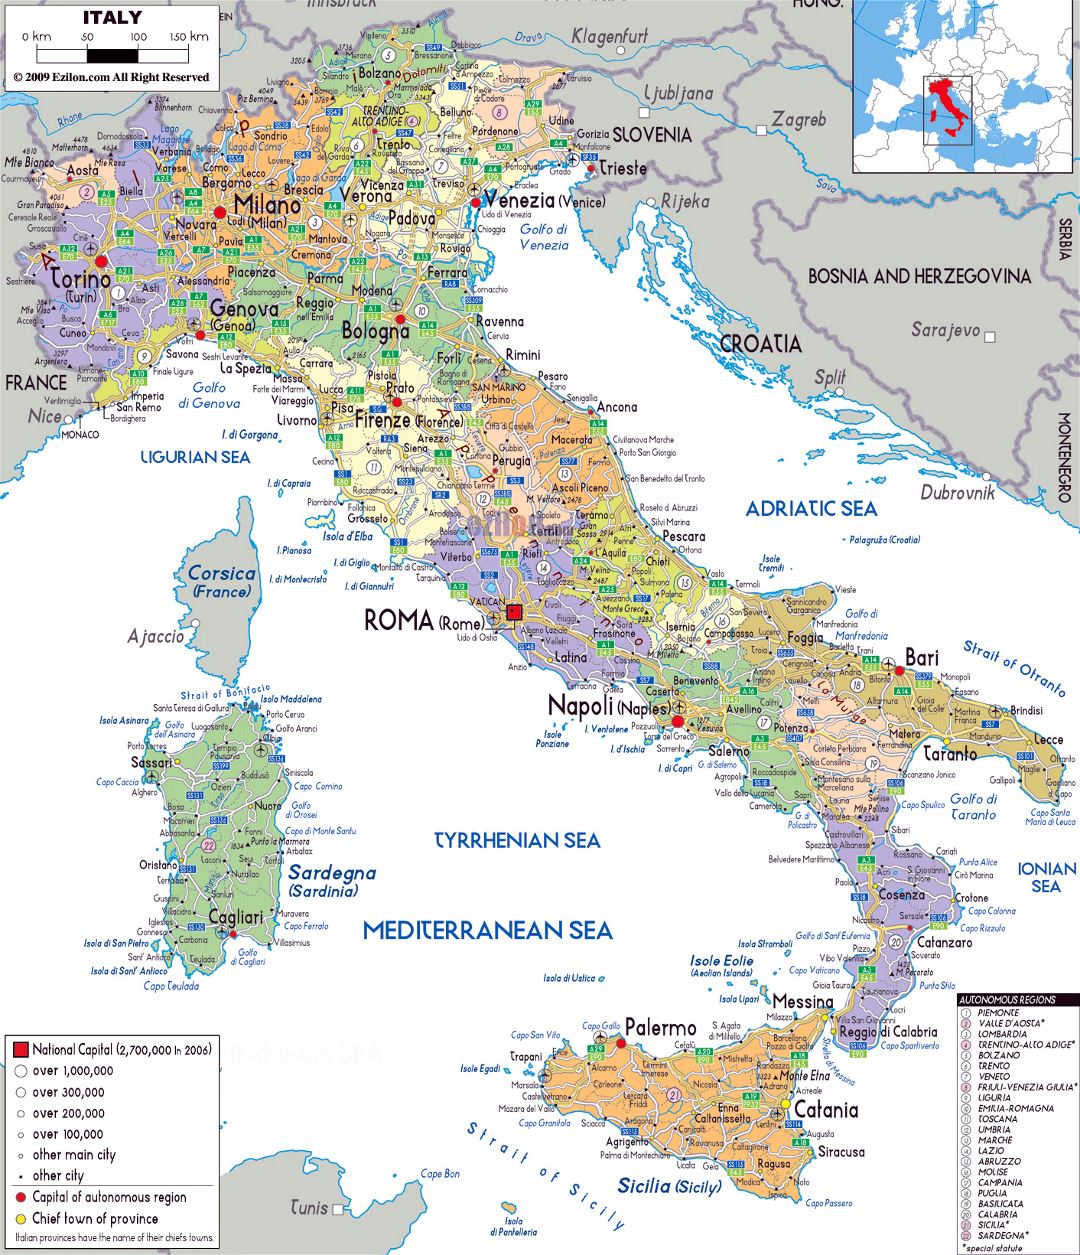 Mapa político y administrativo grande de Italia, con carreteras, ciudades y aeropuertos